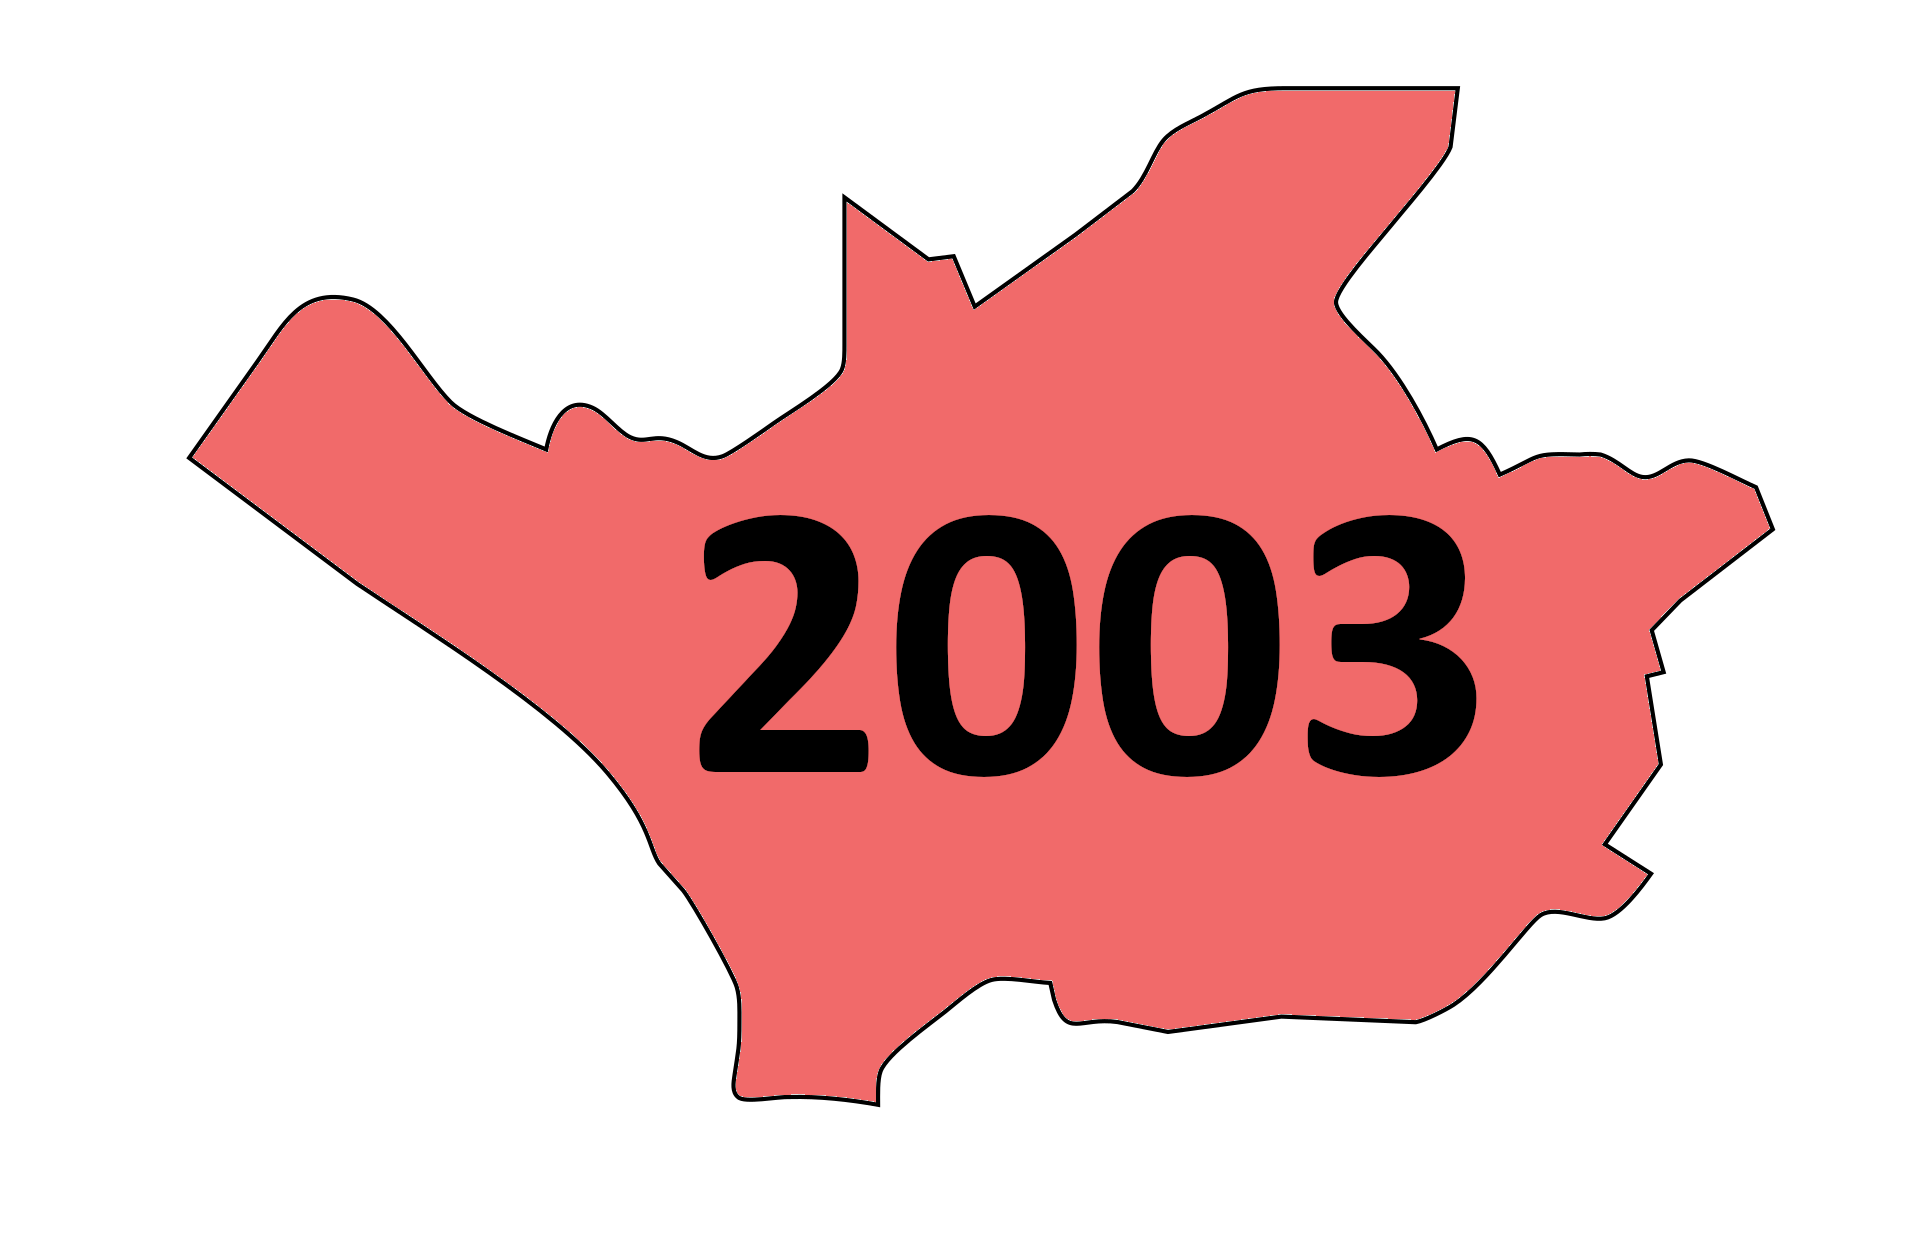 24.07.2003: Unter Gewaltandrohung Konten geplündert